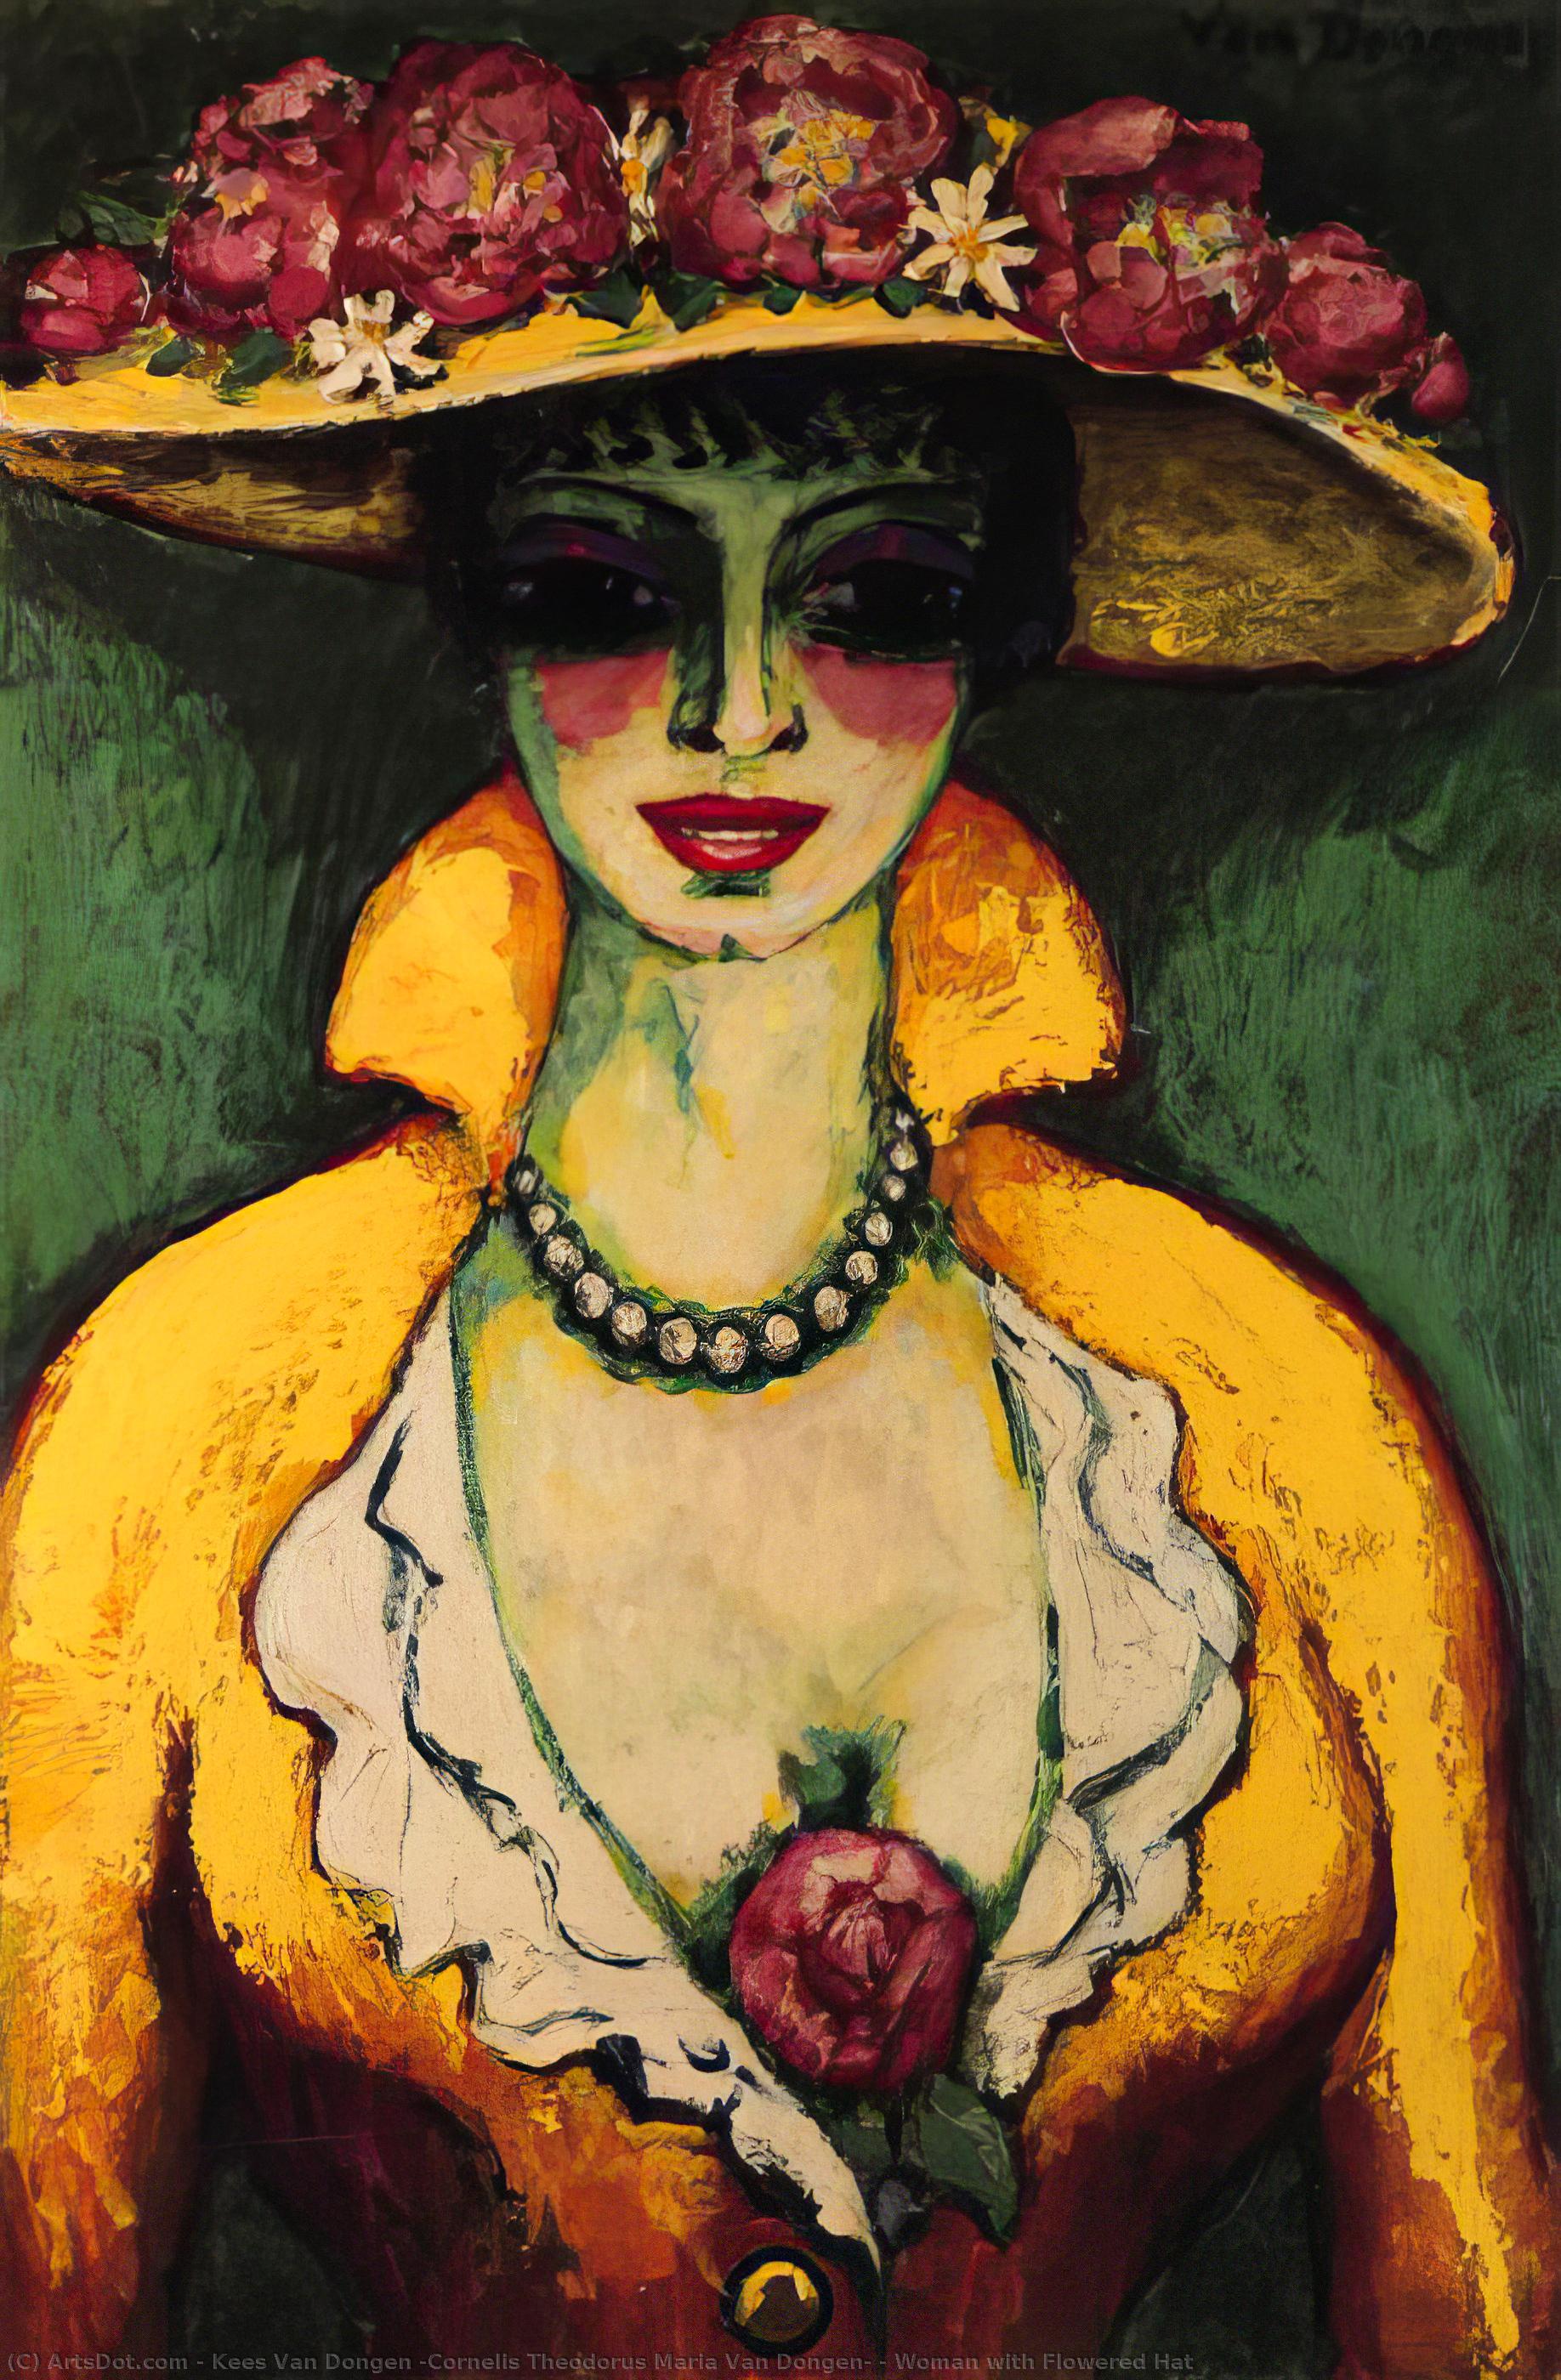 Wikioo.org - สารานุกรมวิจิตรศิลป์ - จิตรกรรม Kees Van Dongen (Cornelis Theodorus Maria Van Dongen) - Woman with Flowered Hat